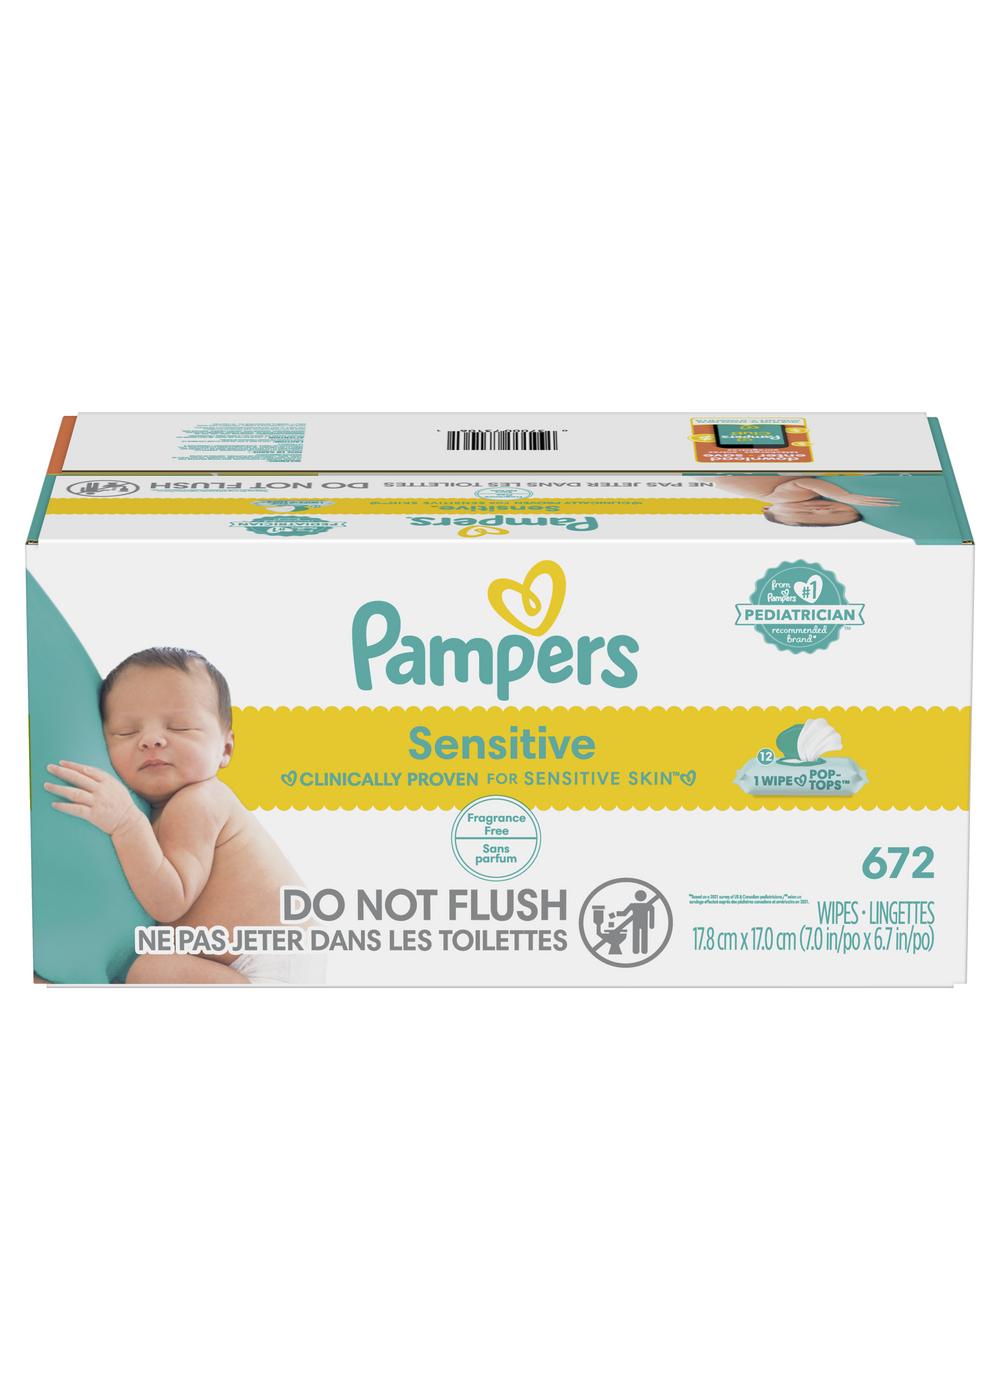 Lingettes bébé Pampers sensitives - Pampers